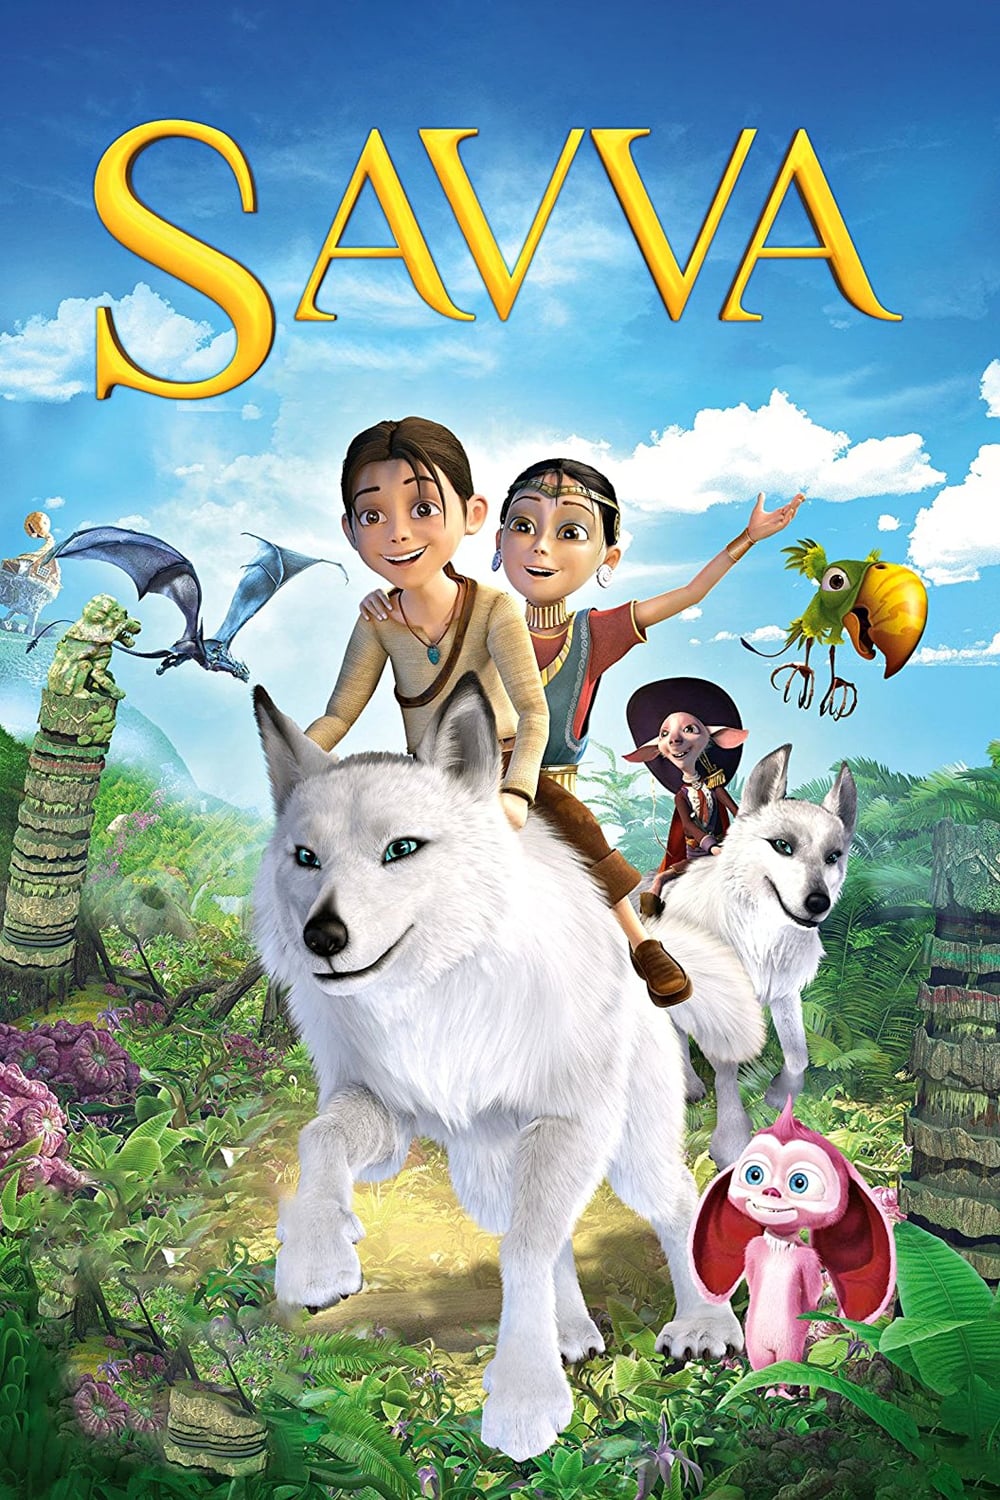 Savva. Heart of the Warrior (2015)